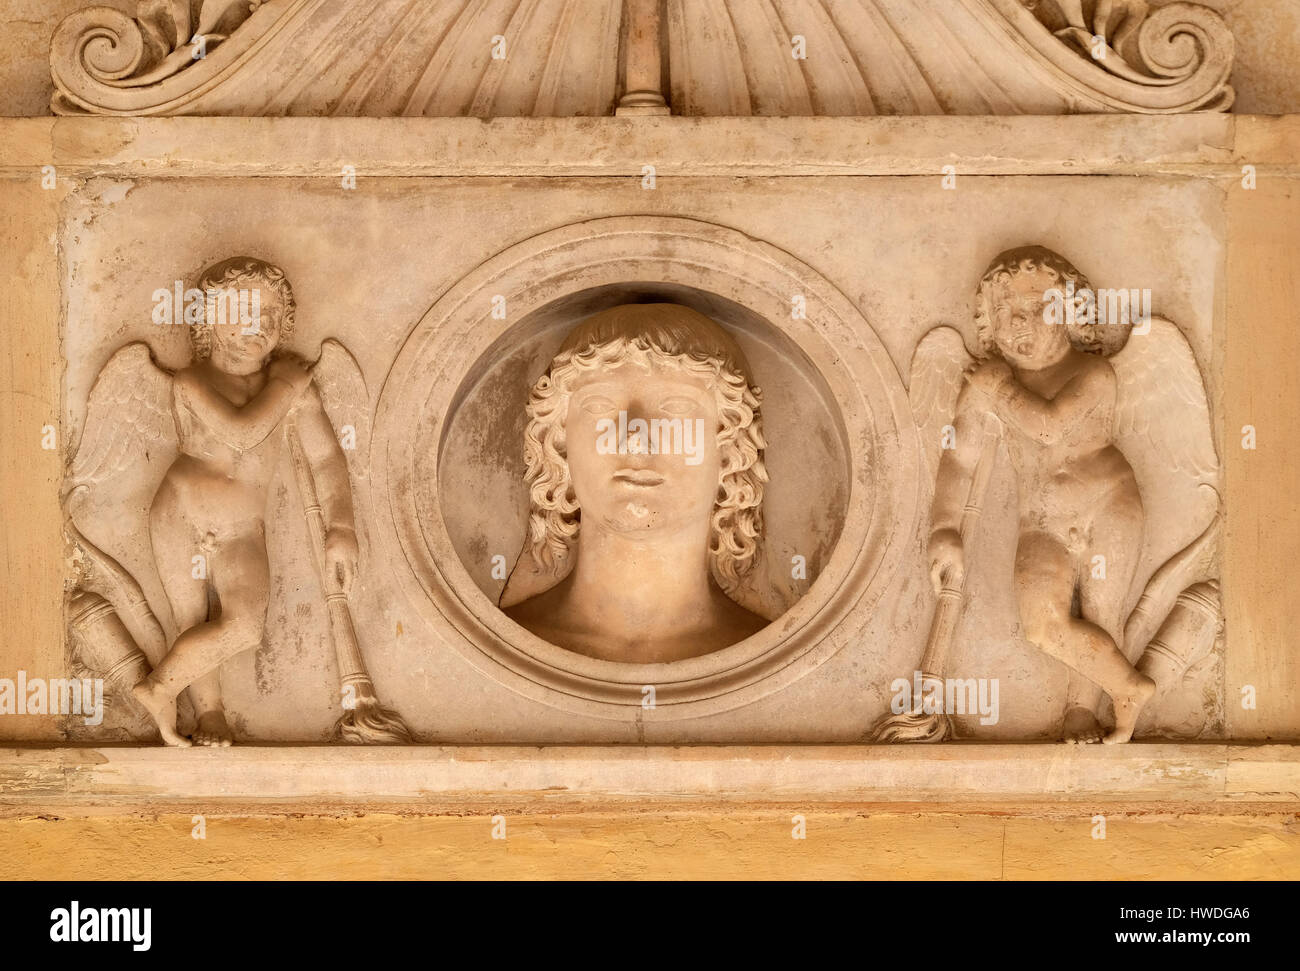 Giovane uomo di famiglia Colonna, fiancheggiata da una coppia di amorini con torce downturned, basso rilievo nel portico della chiesa dei Santi XII Apostoli a Roma Foto Stock